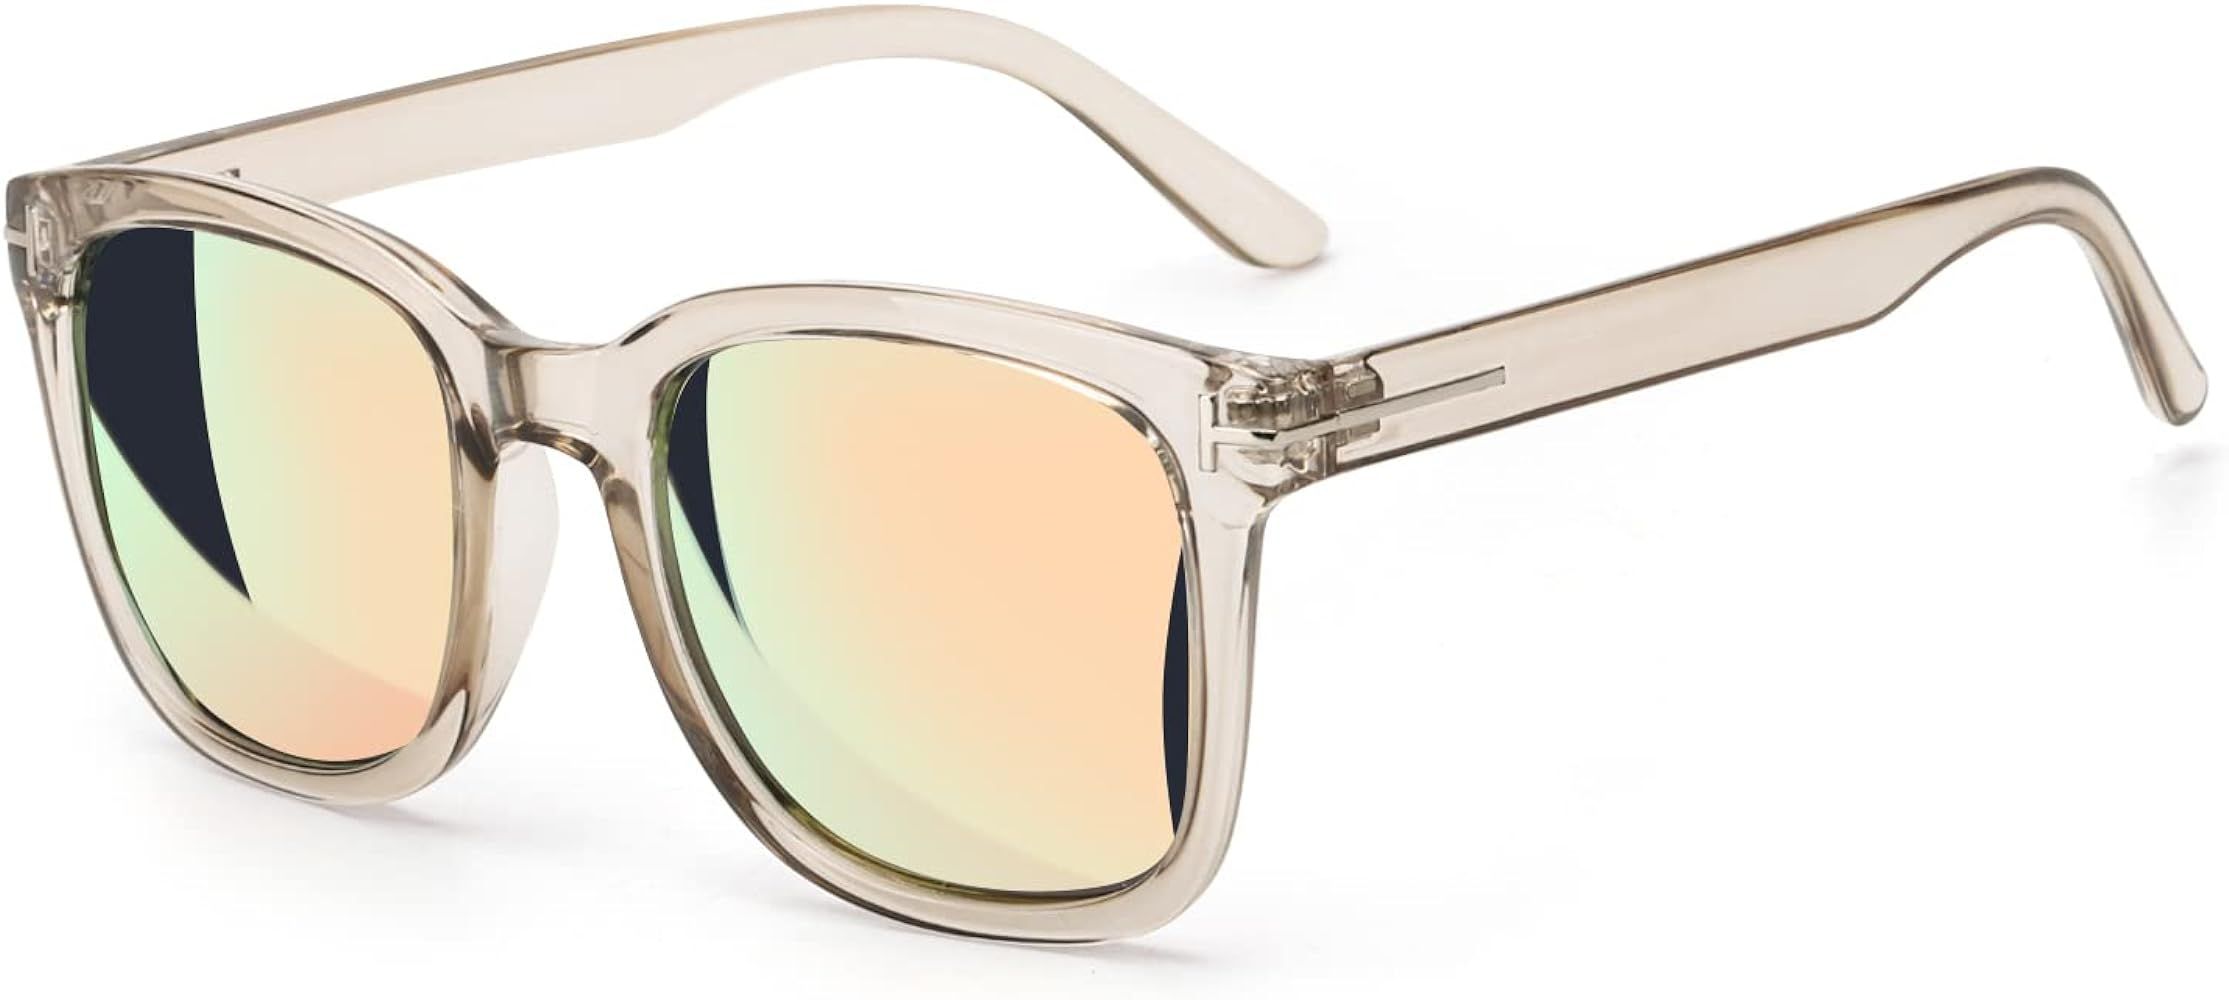 Myiaur Fashion Sunglasses for Women Polarized Driving Anti Glare UV400 Protection Stylish Design | Amazon (US)